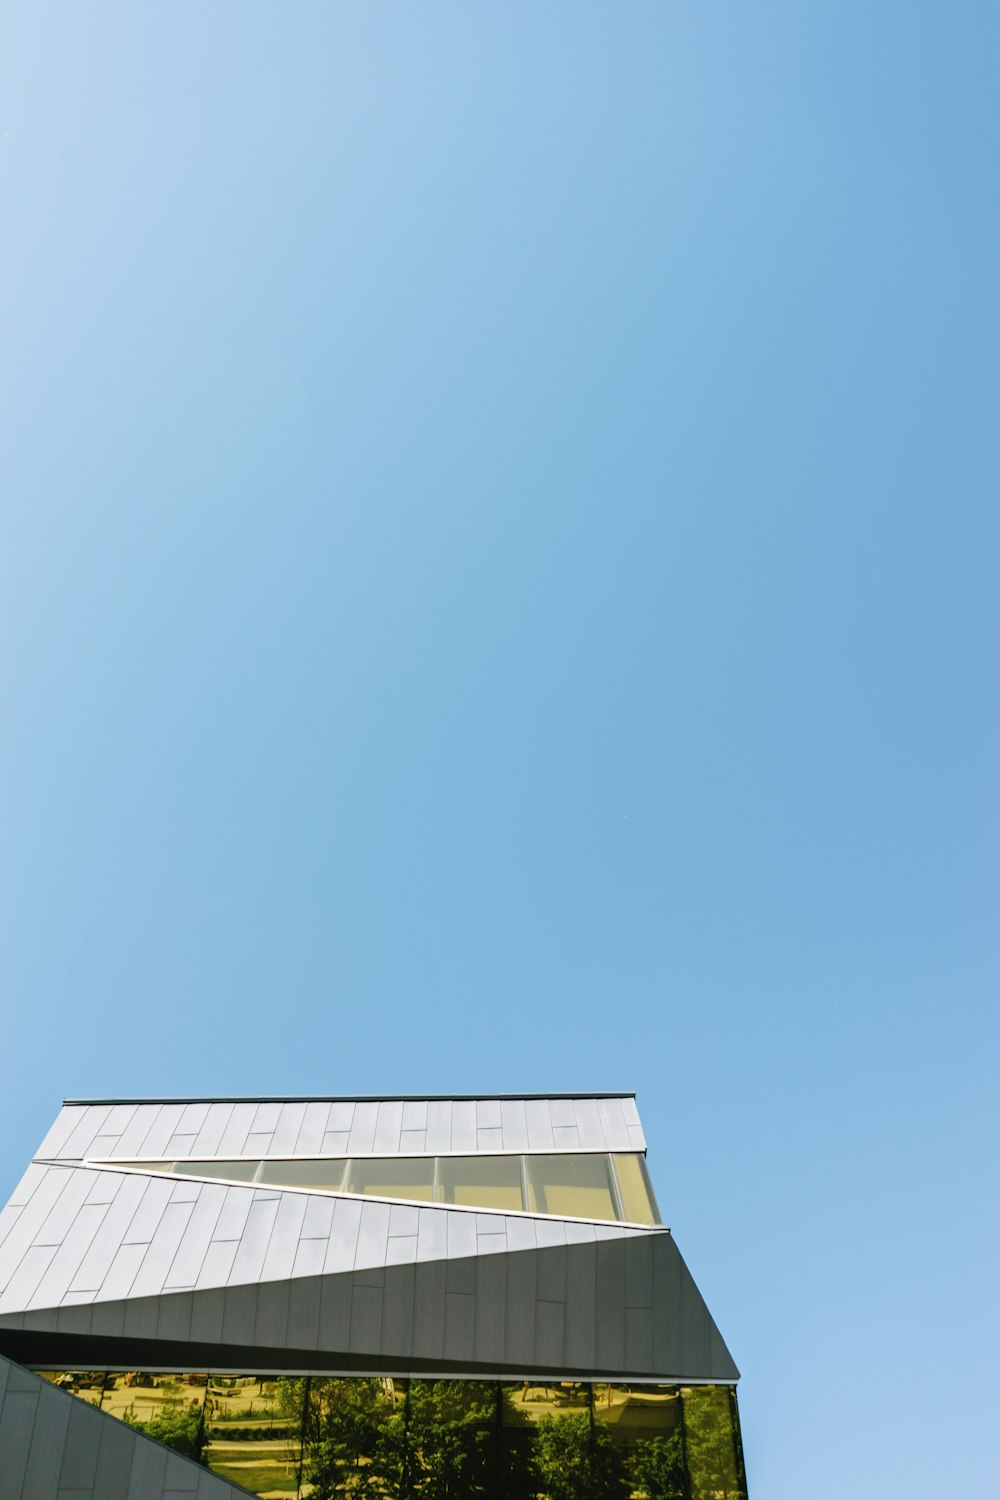 Fotografía de ángulo bajo de un edificio de hormigón blanco bajo un cielo azul claro